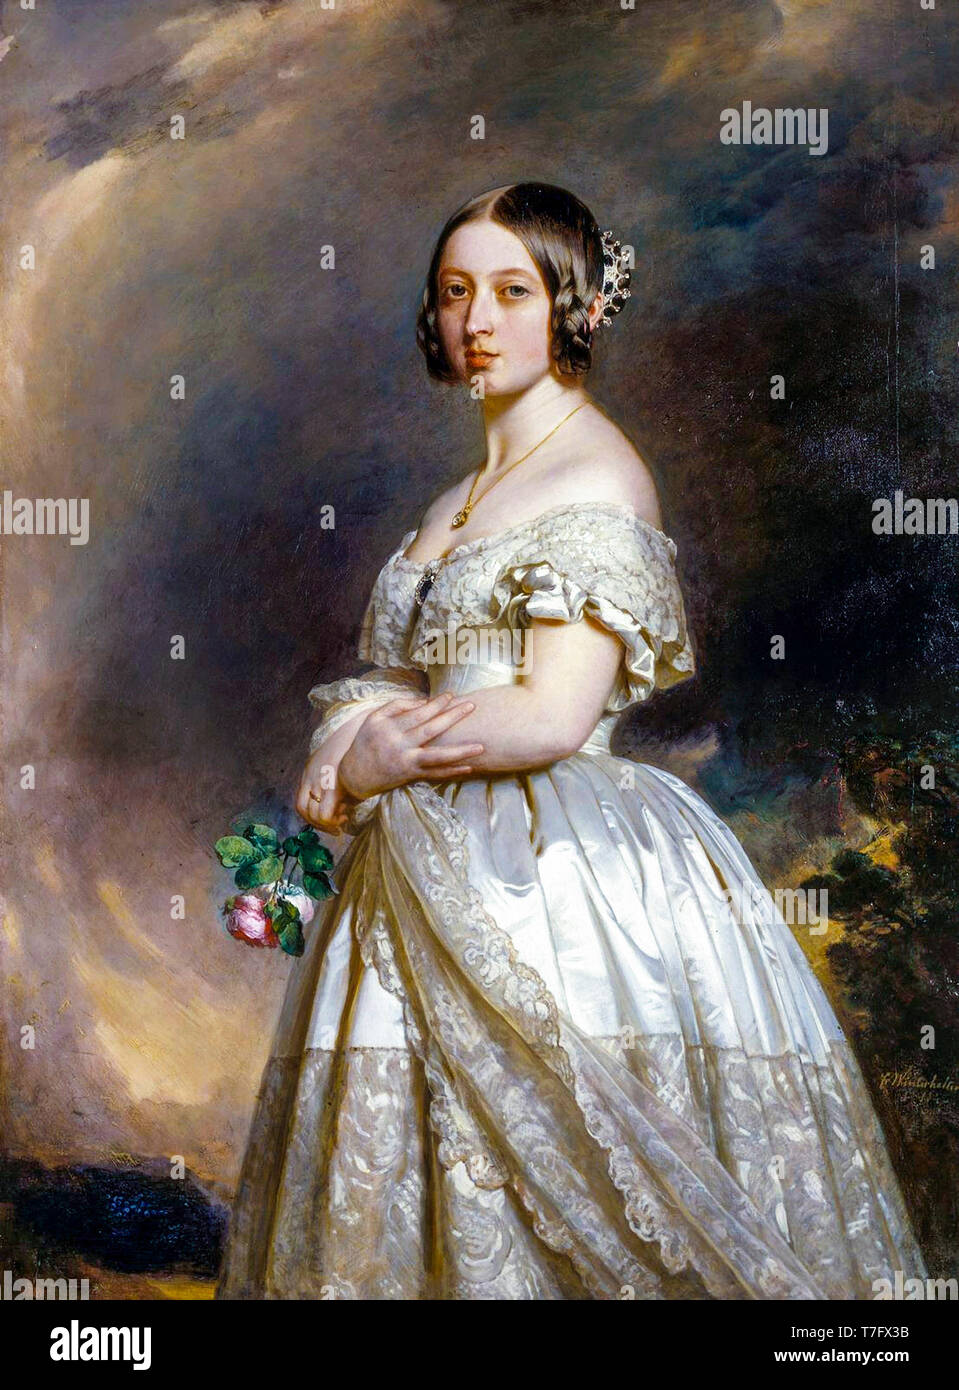 La reina Victoria como una mujer joven, retrato de Franz Xaver Winterhalter, 1842 Foto de stock